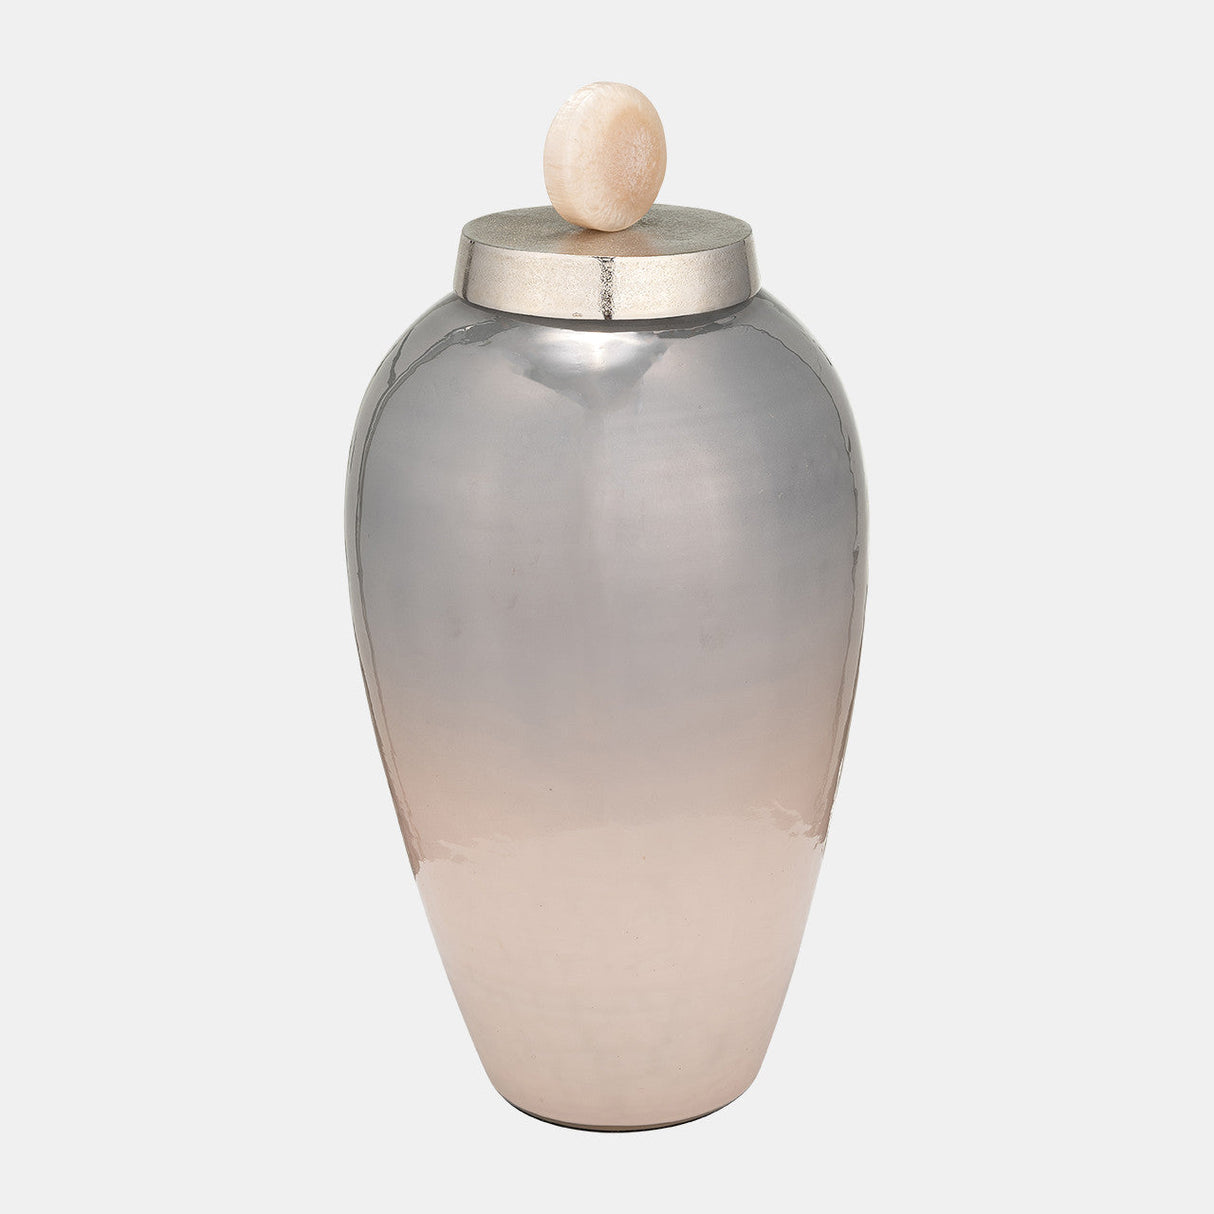 20"h Glass Vase W/ Blush Knob, Champagne